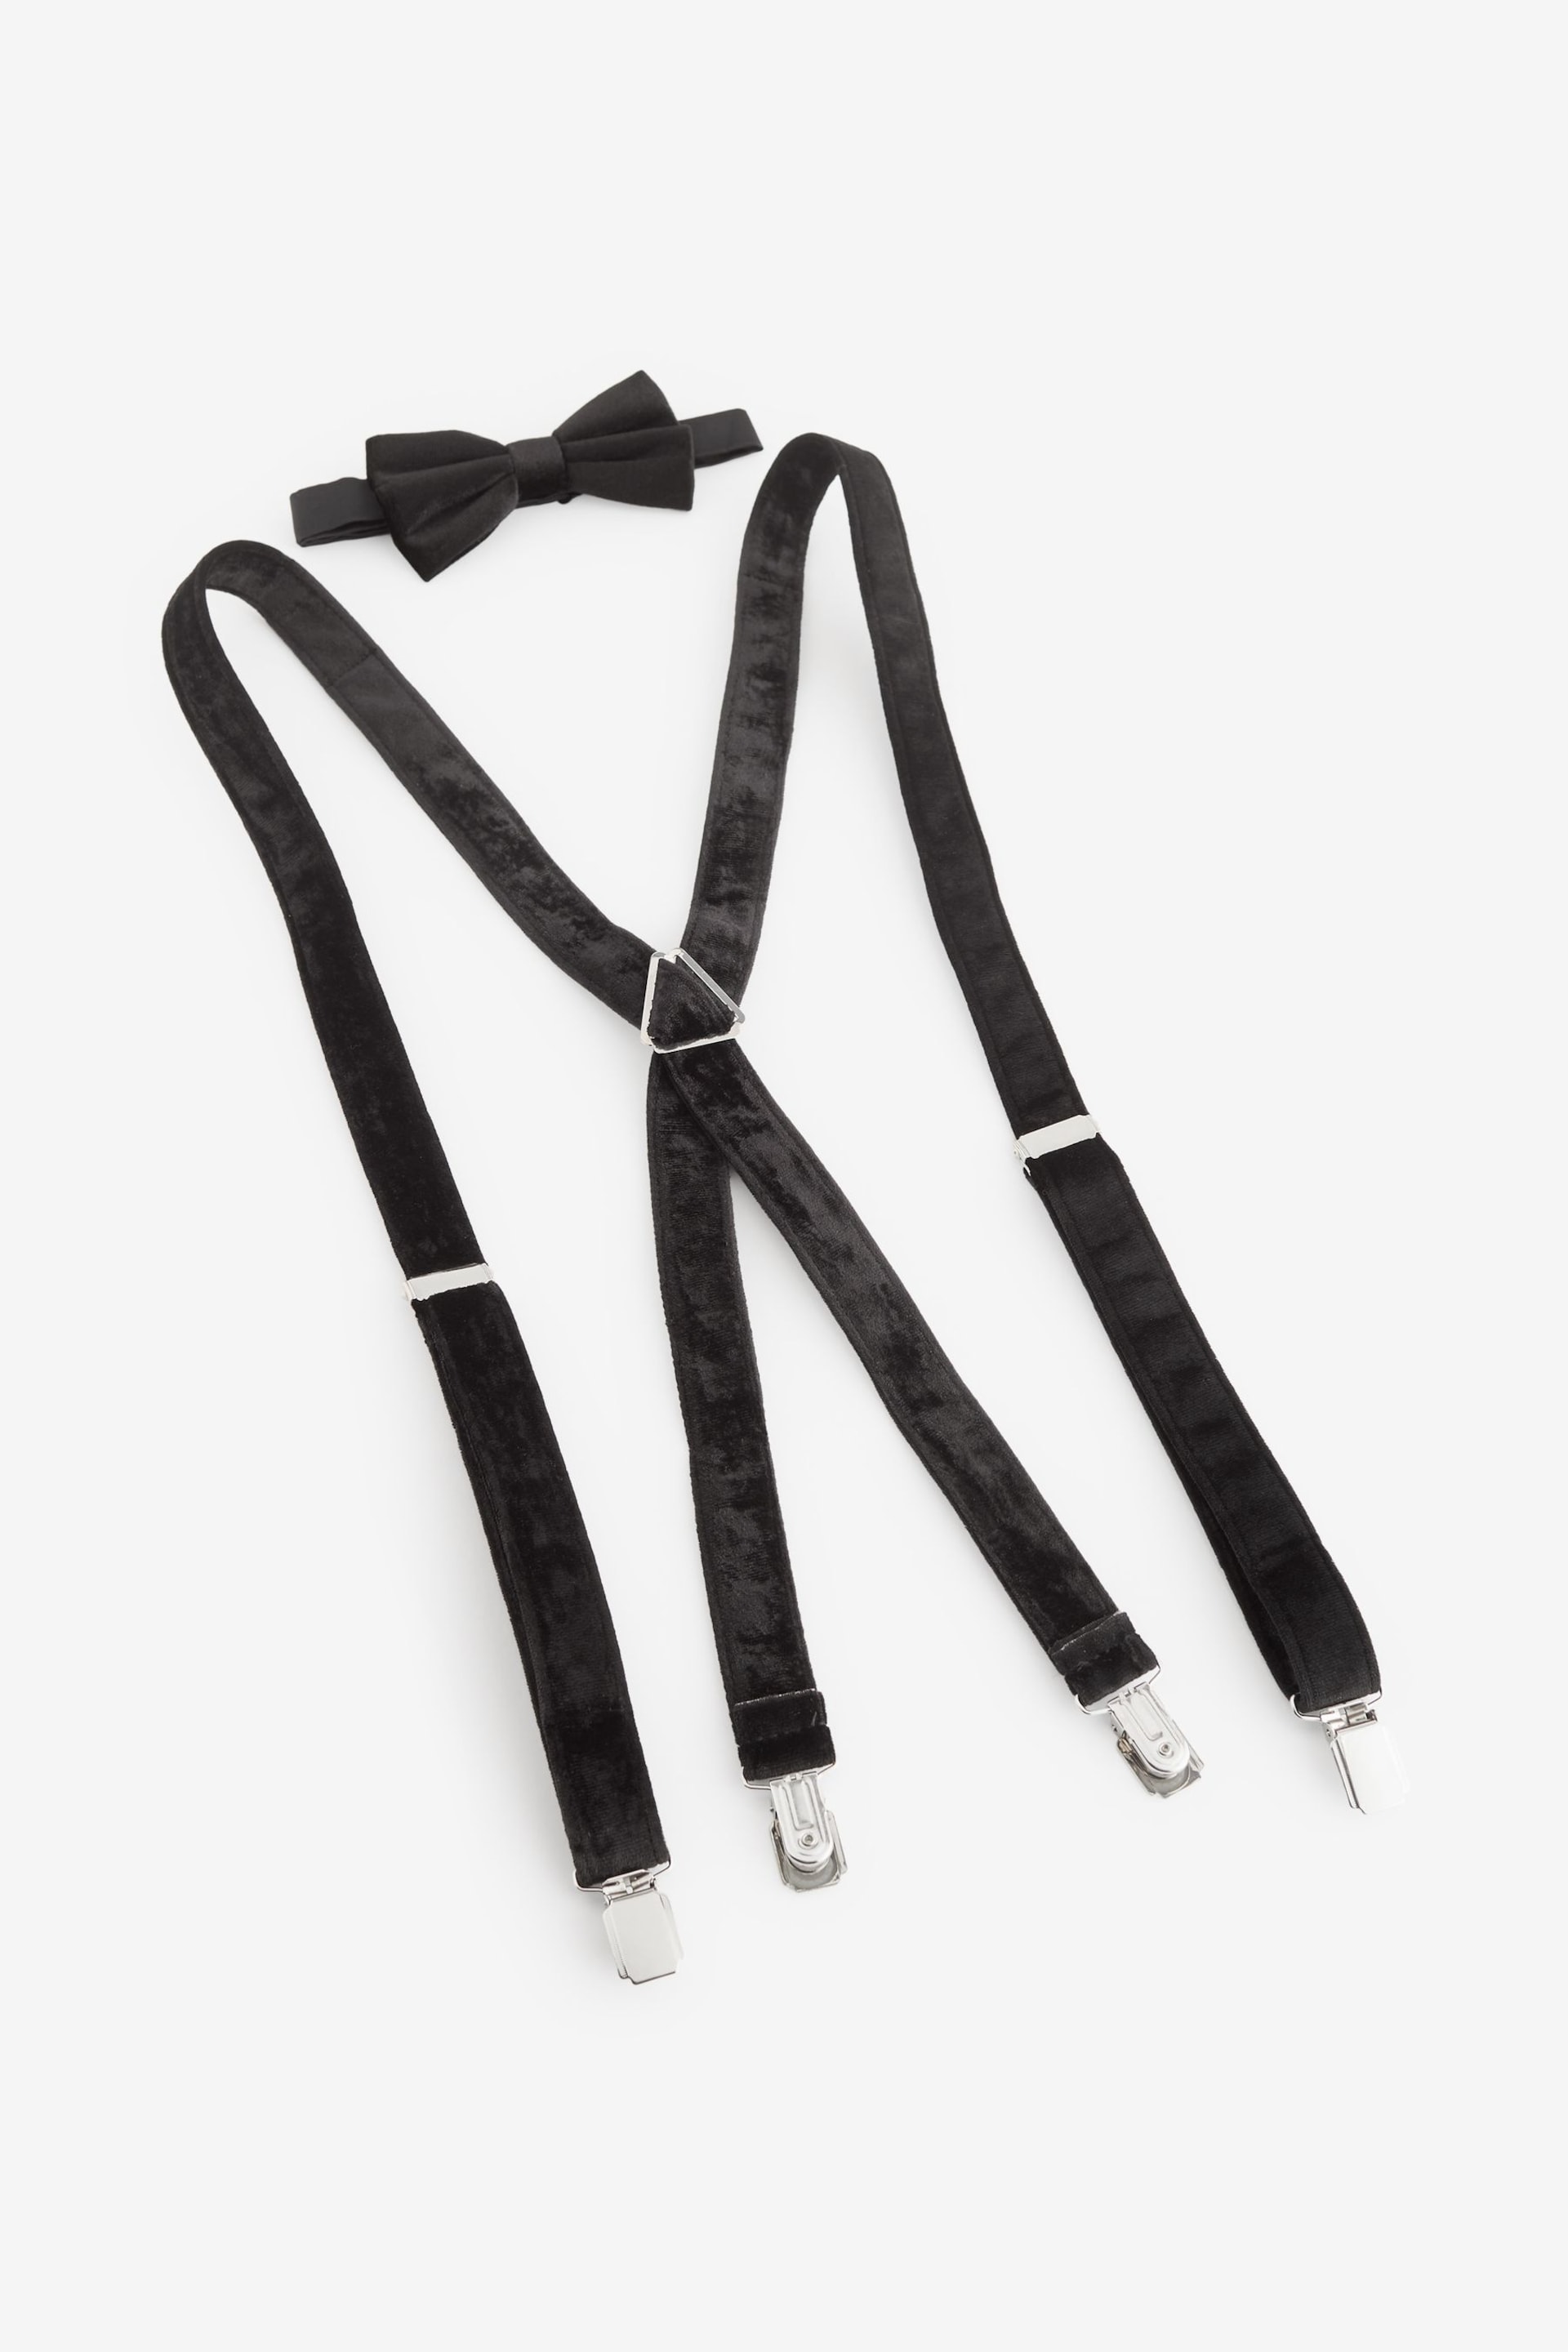 Black Velvet Bow Tie and Braces - Image 4 of 5